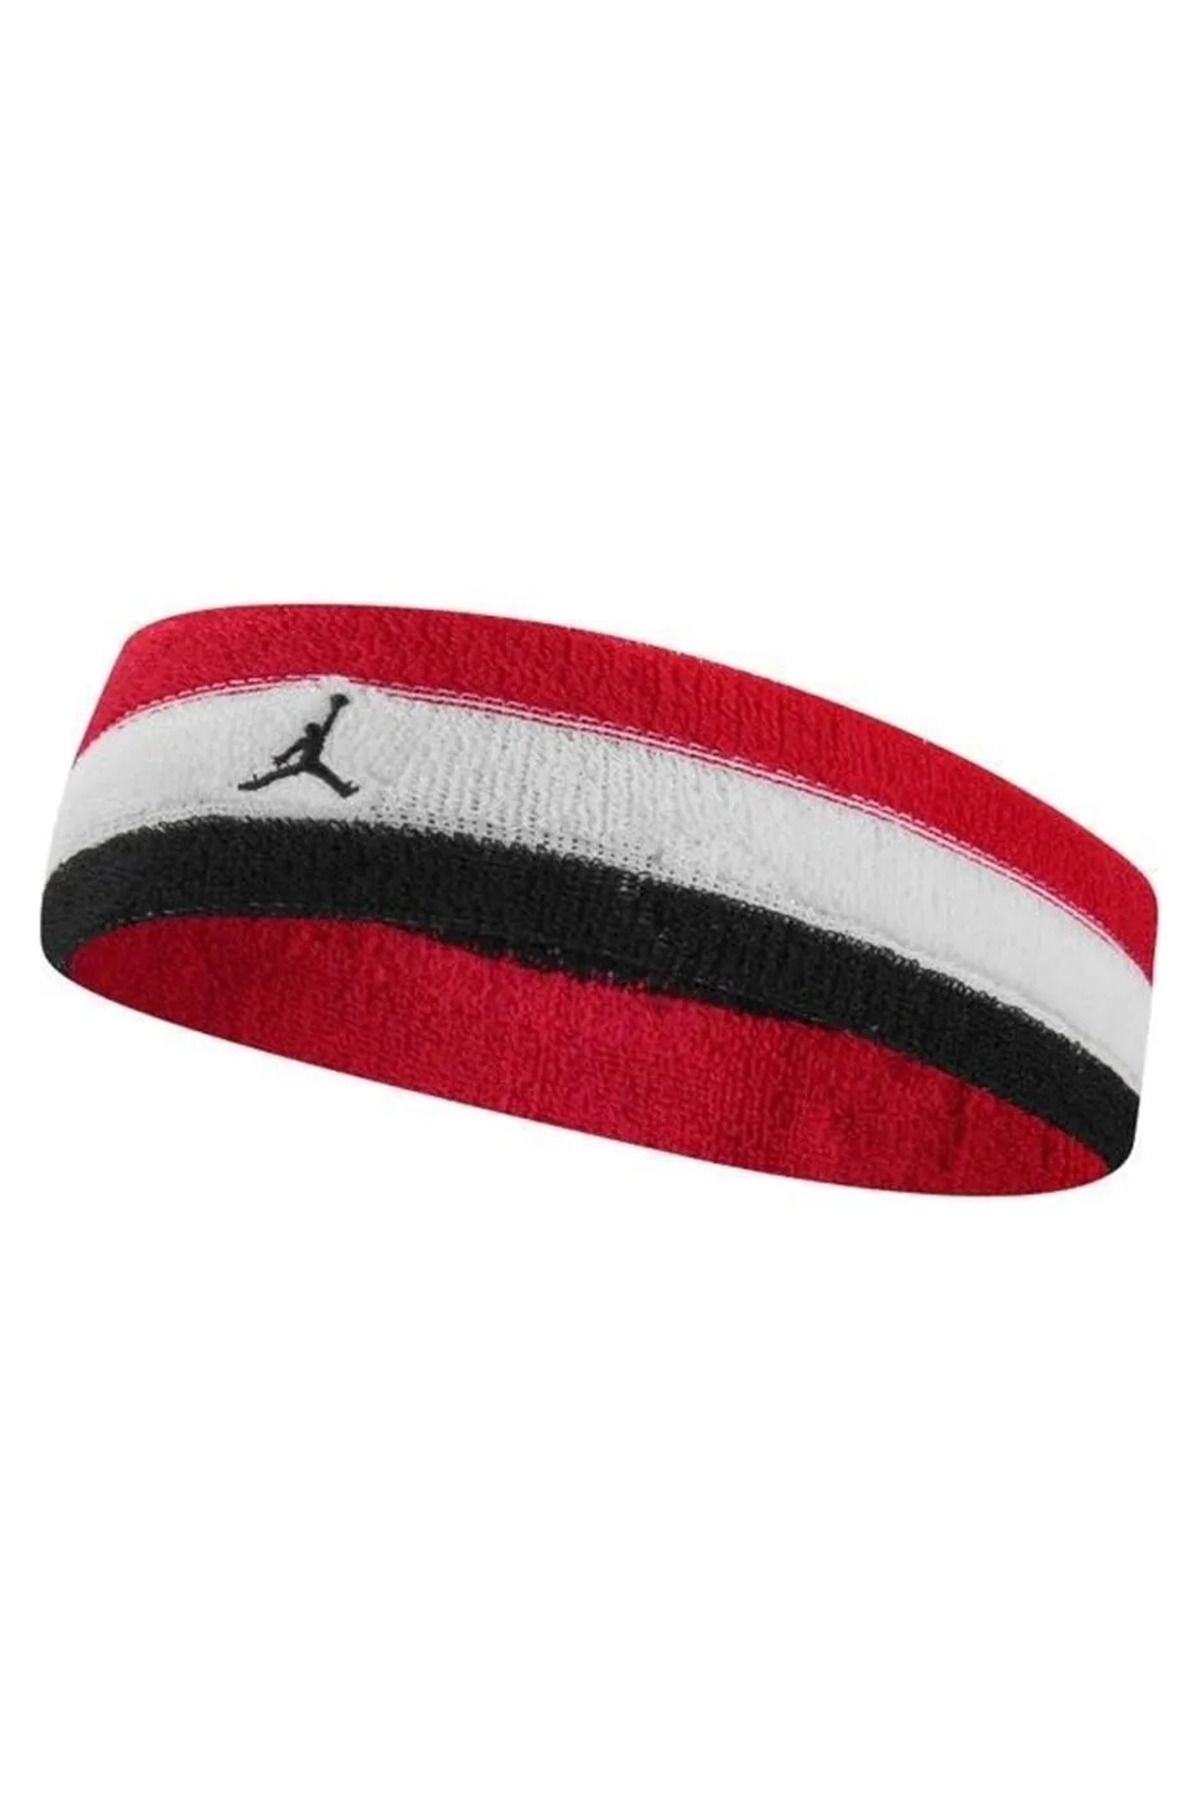 Nike Jordan Unisex Kırmızı Antrenman Saç Bandı J.100.4299.667.os